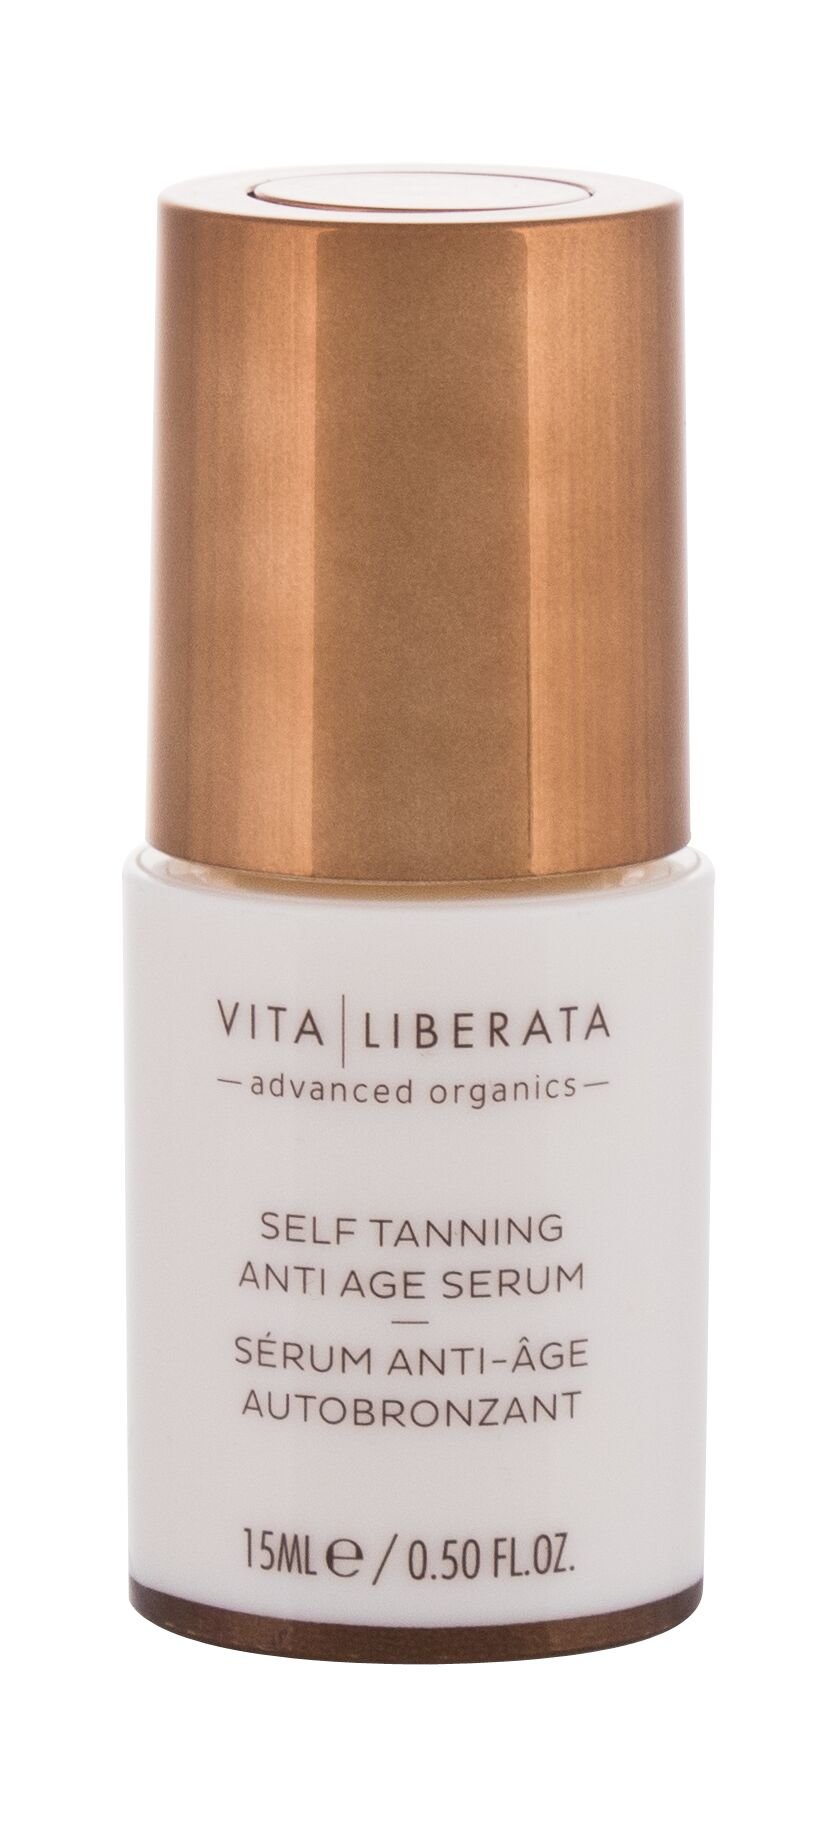 Vita Liberata Self Tanning Anti Age Serum 15ml savaiminio įdegio kremas (Pažeista pakuotė)